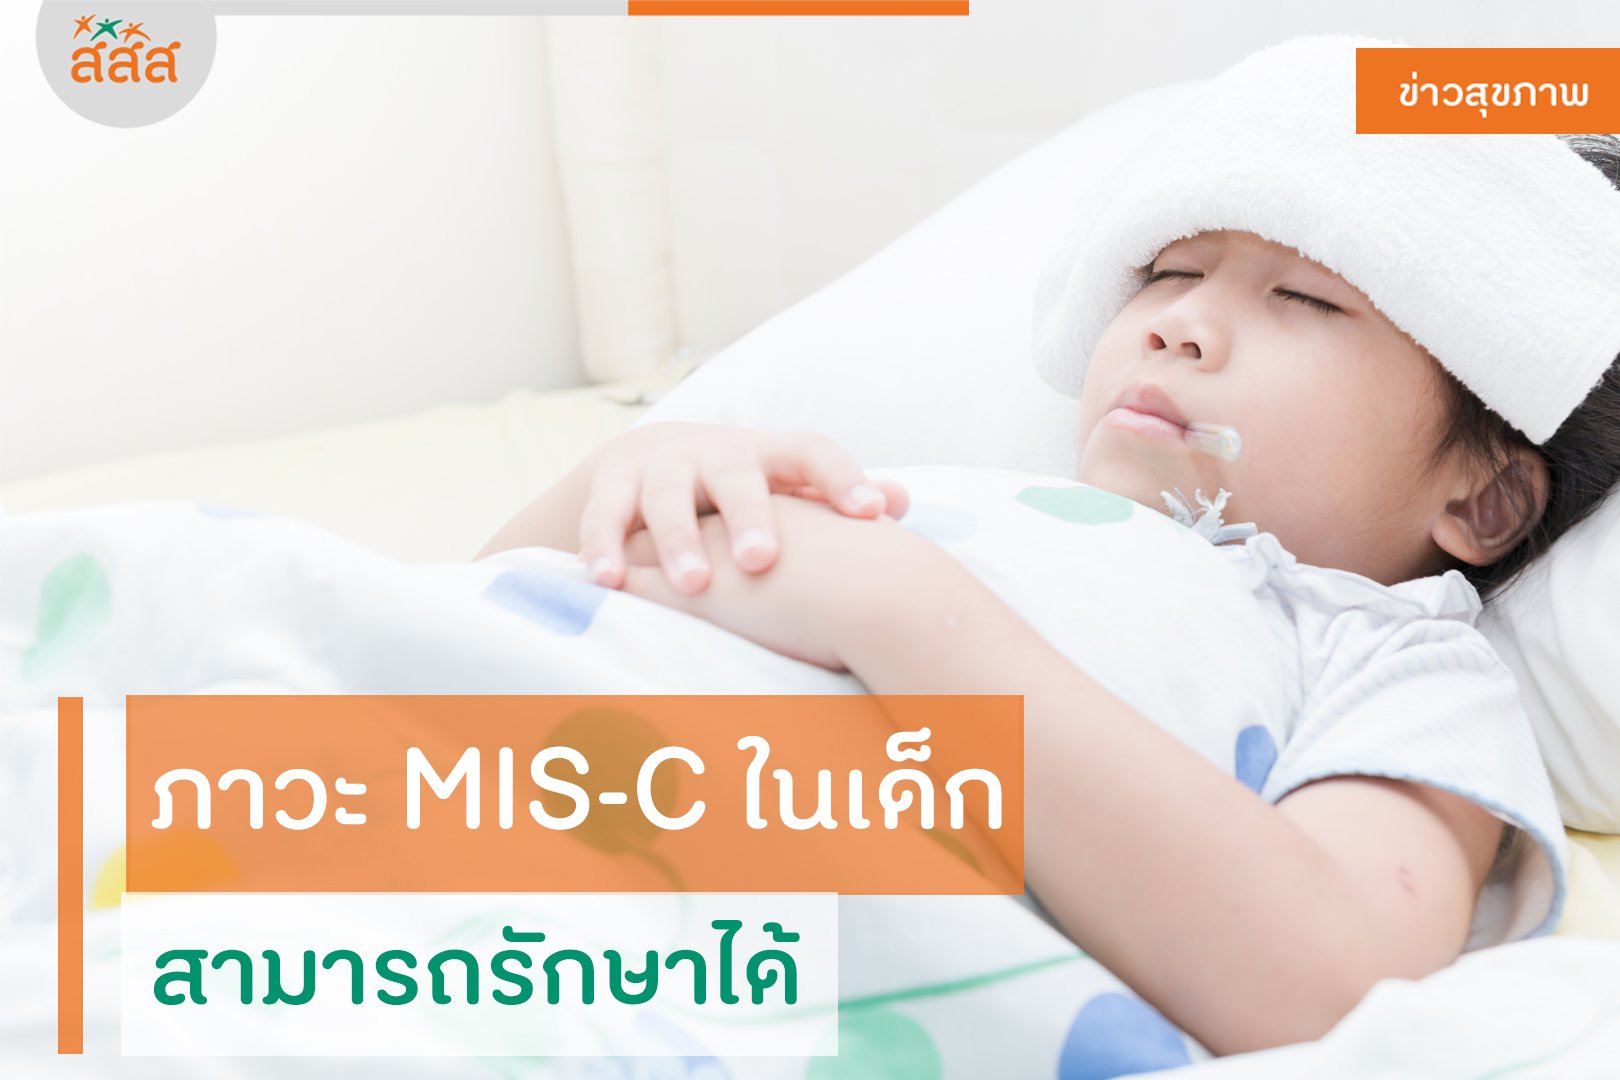 ภาวะ MIS-C ในเด็กสามารถรักษาได้ thaihealth